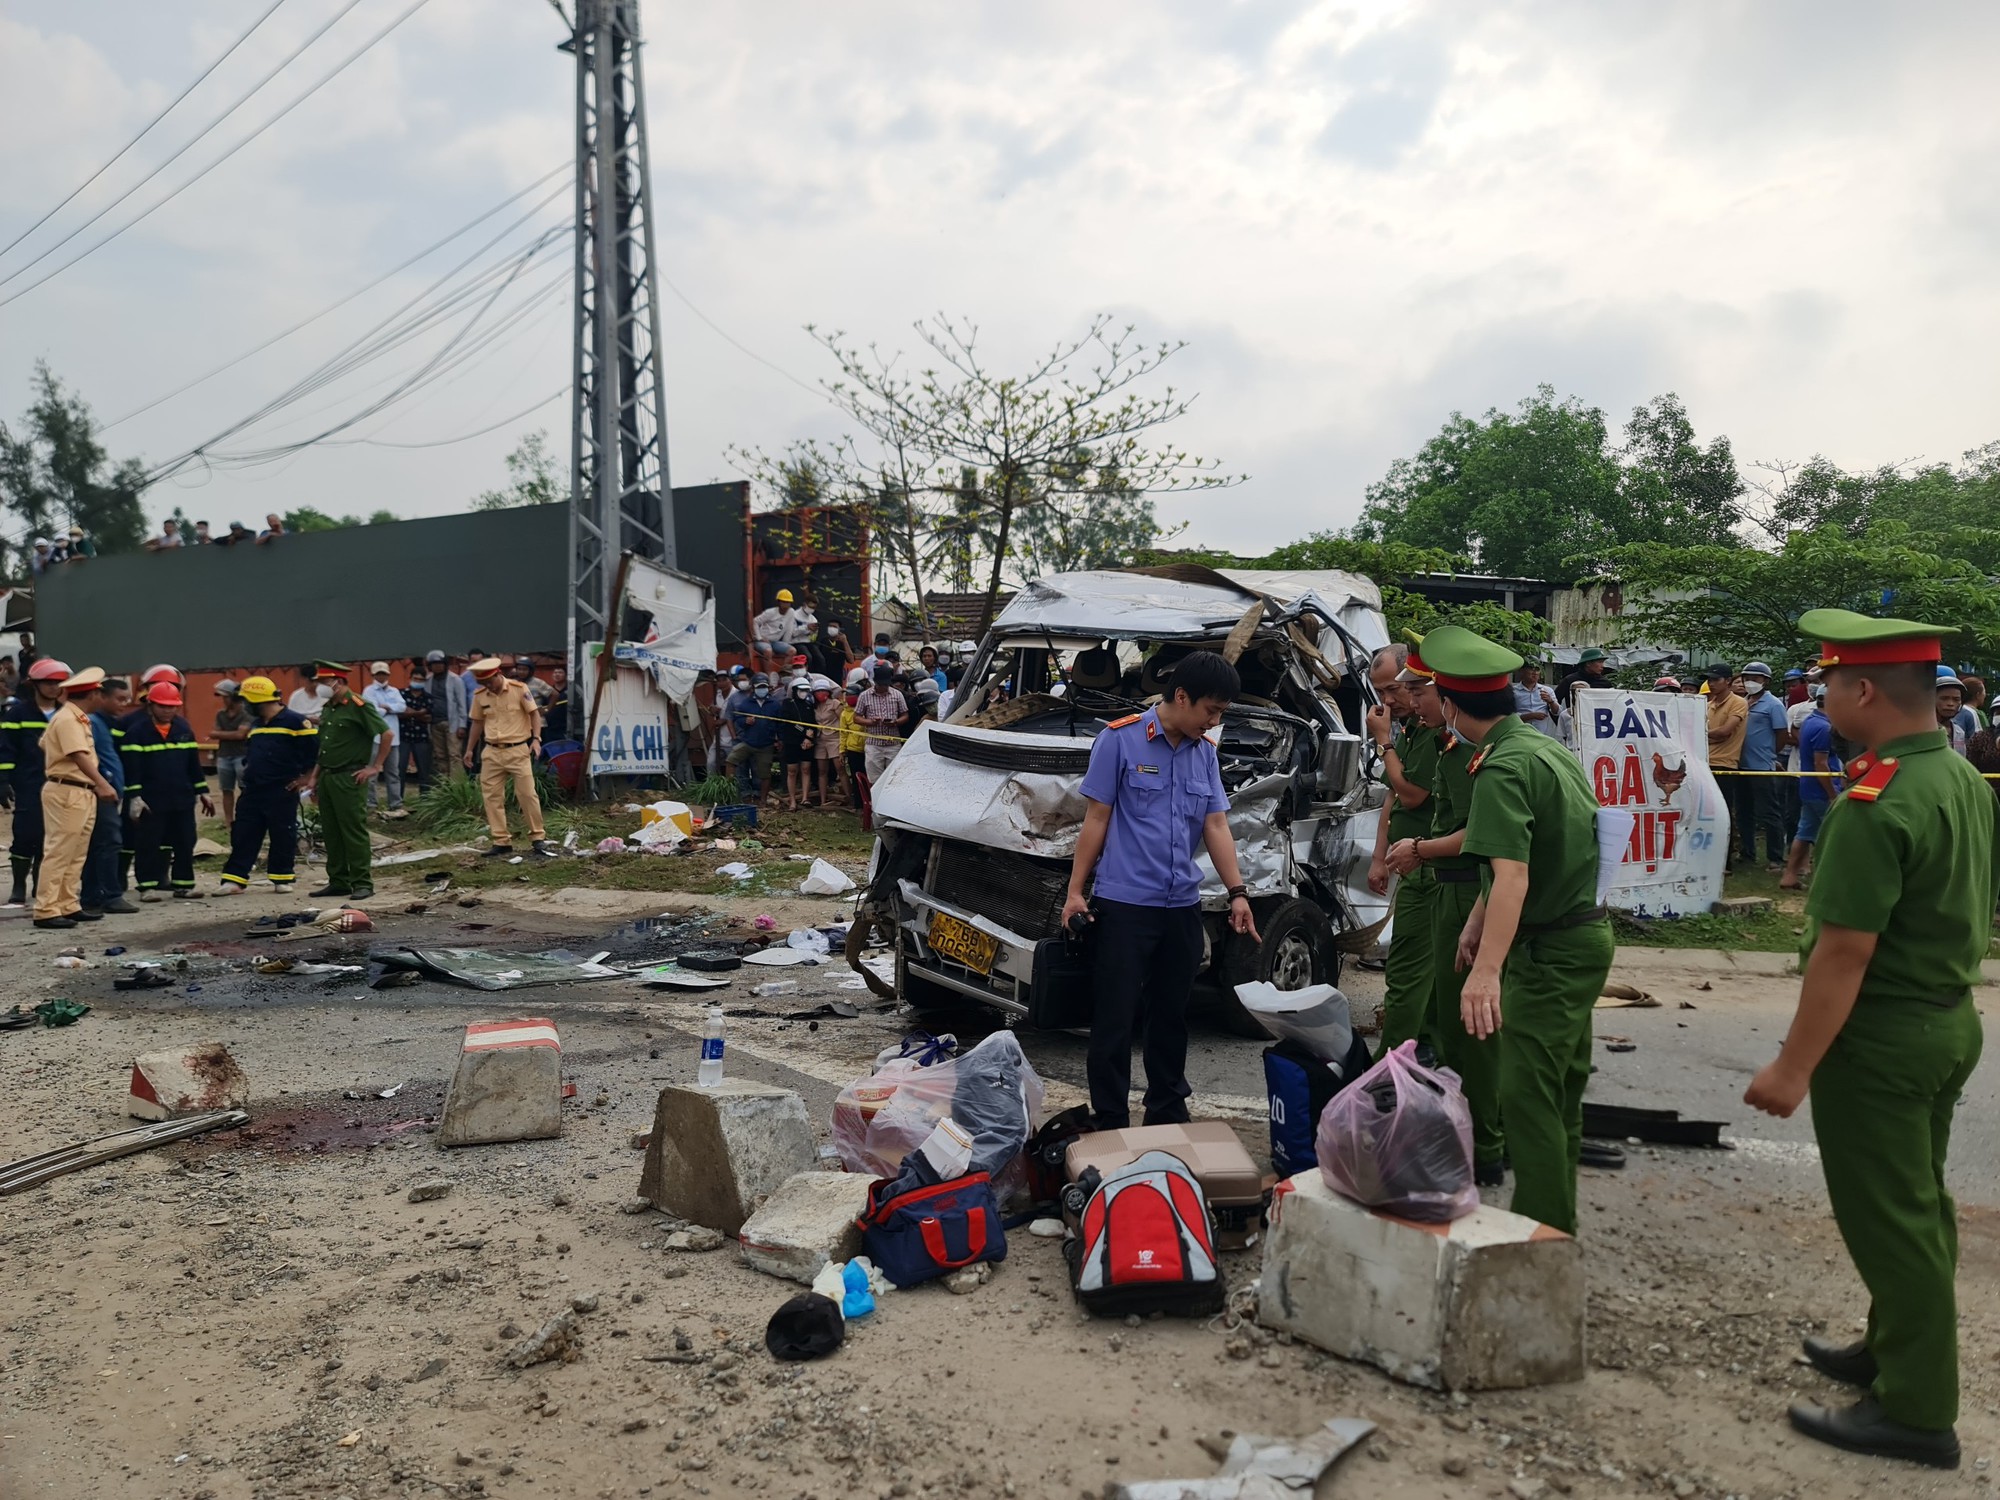 Vụ tai nạn 8 người chết ở Núi Thành, Quảng Nam: Một nạn nhân 87 tuổi ngưng tim, gia đình xin đưa về nhà - Ảnh 2.